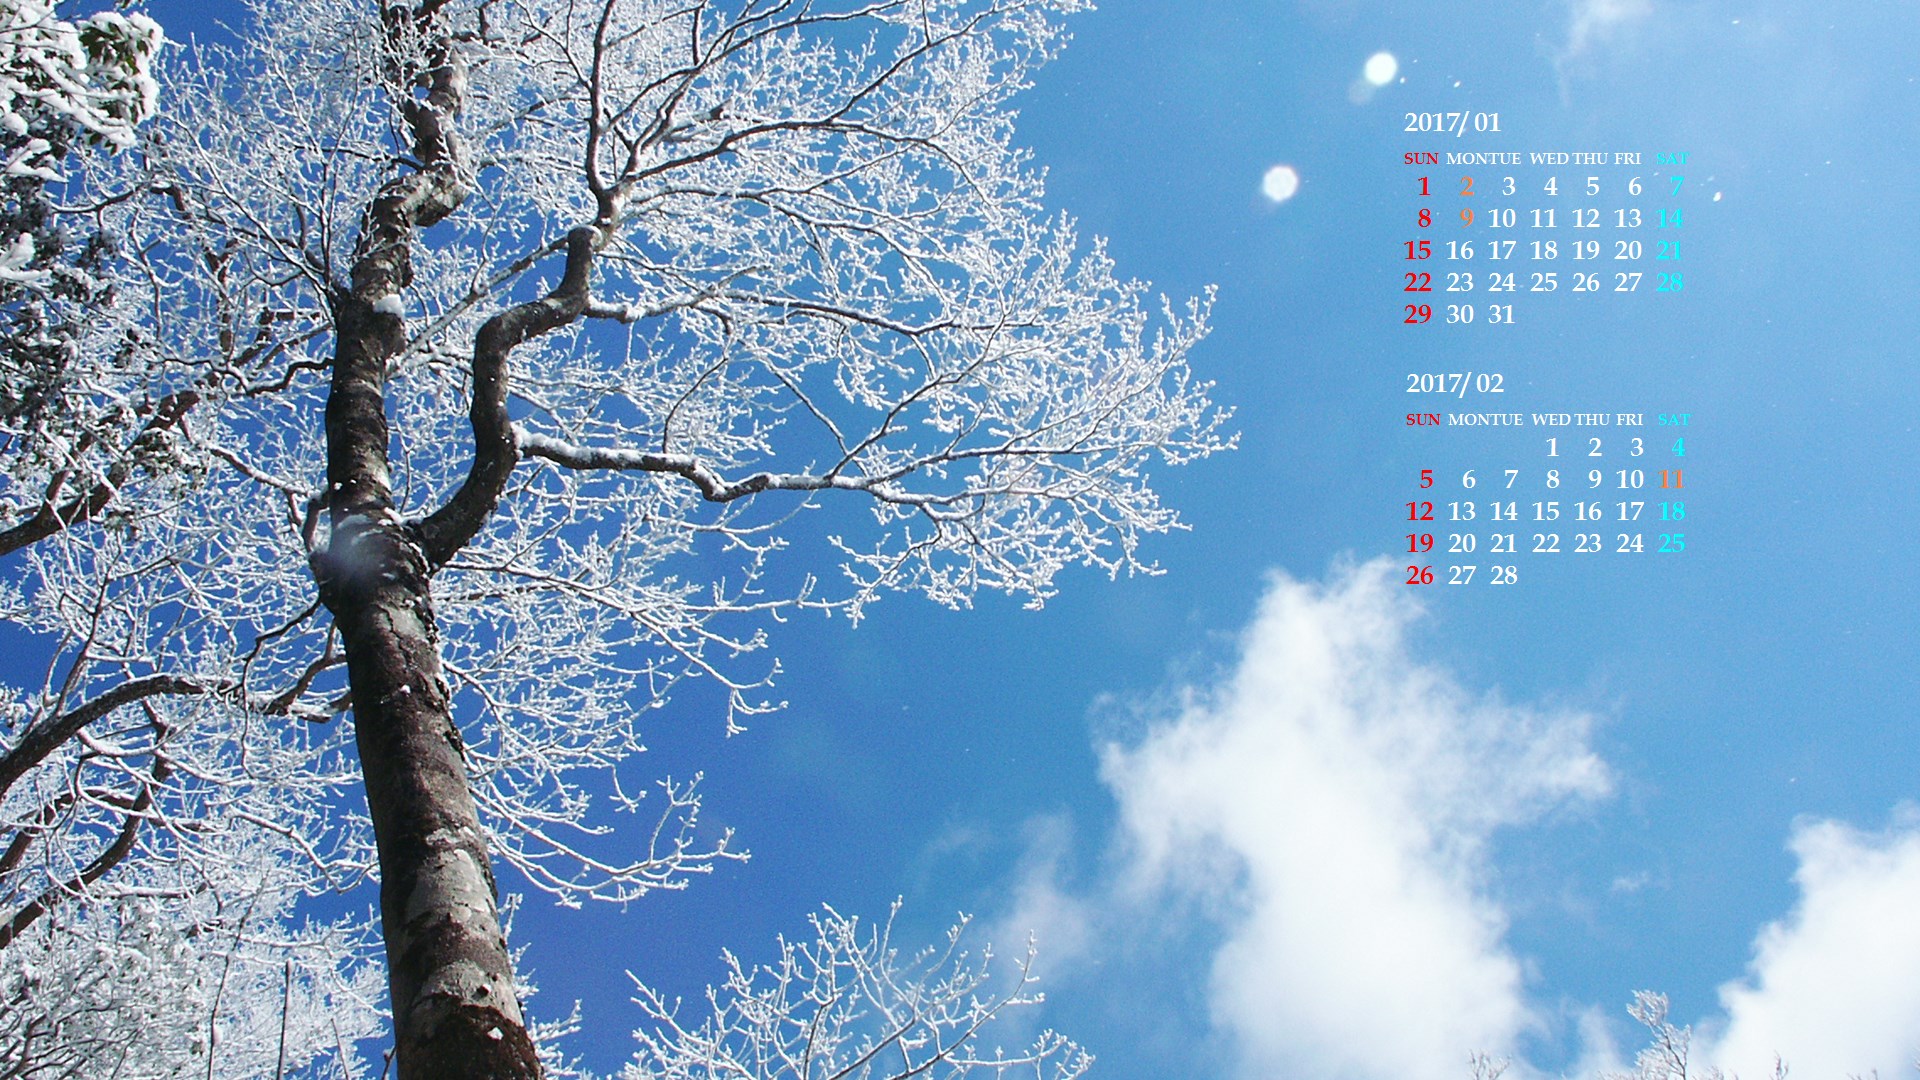 青空とさわやかな霧氷 17年1月カレンダー壁紙 カレンダー壁紙館 昴 無料ワイド